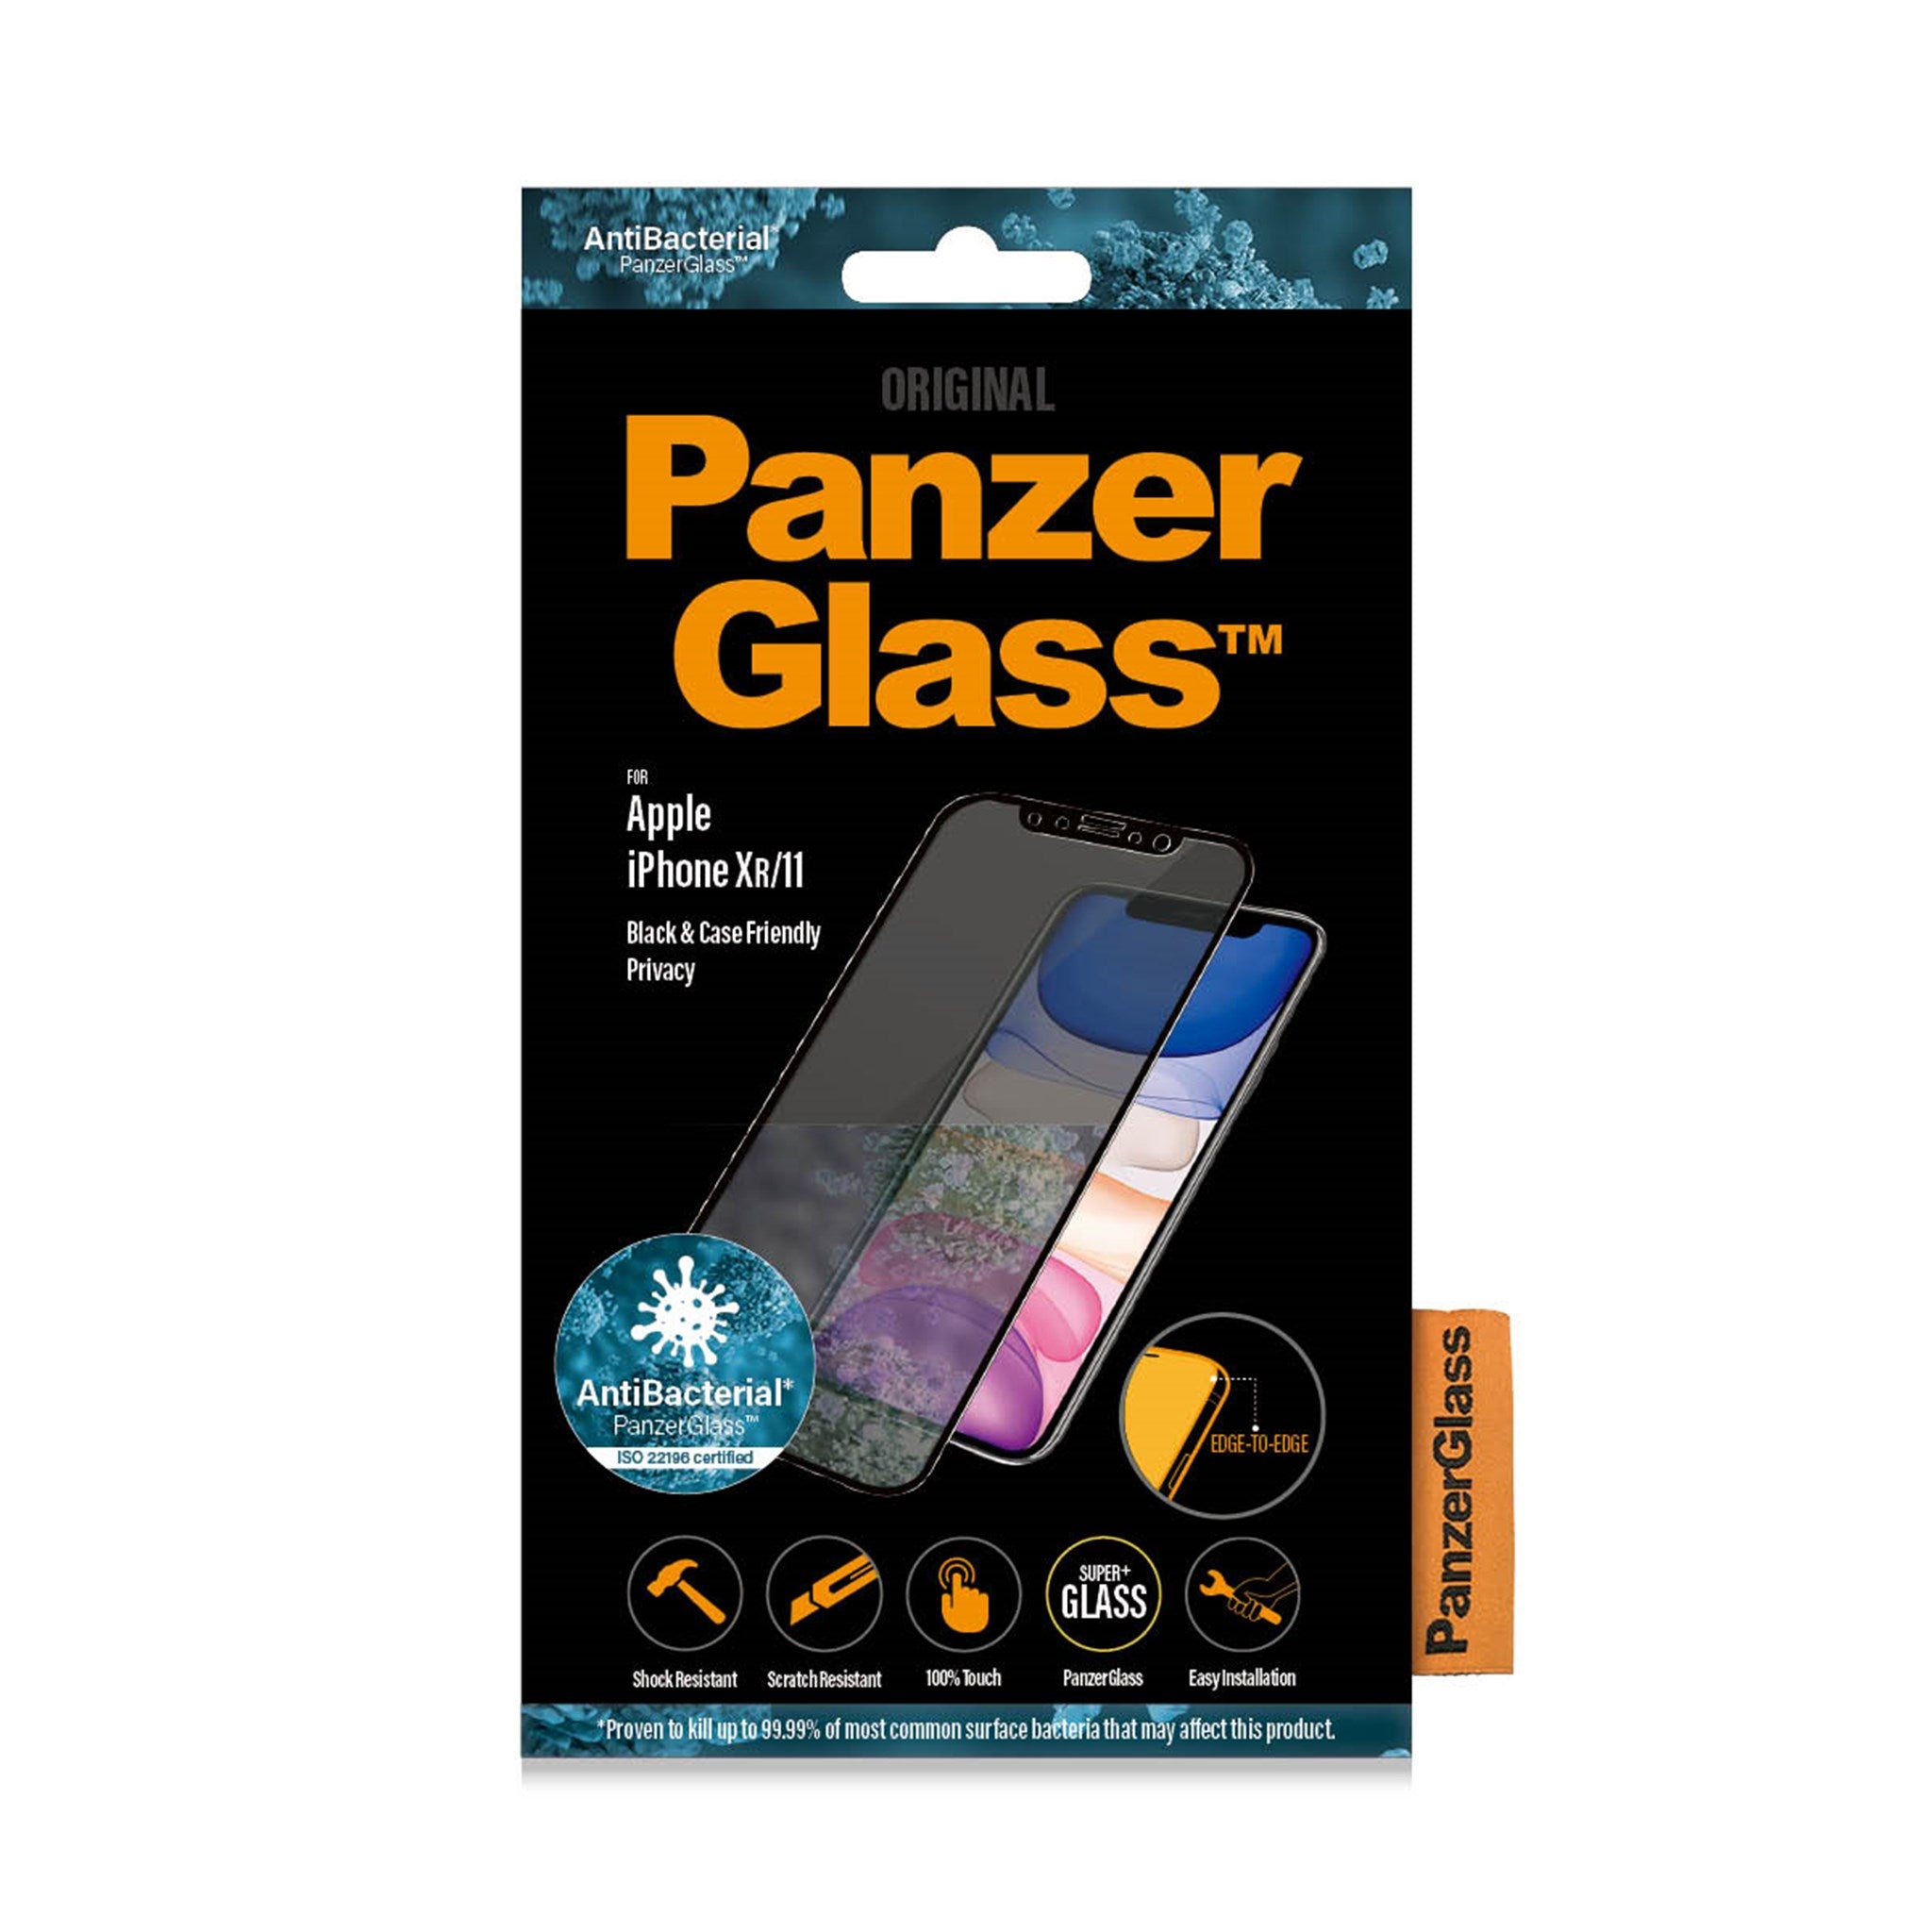 Panzerglass Protection d'écran Case Friendly Fingerprint Ga